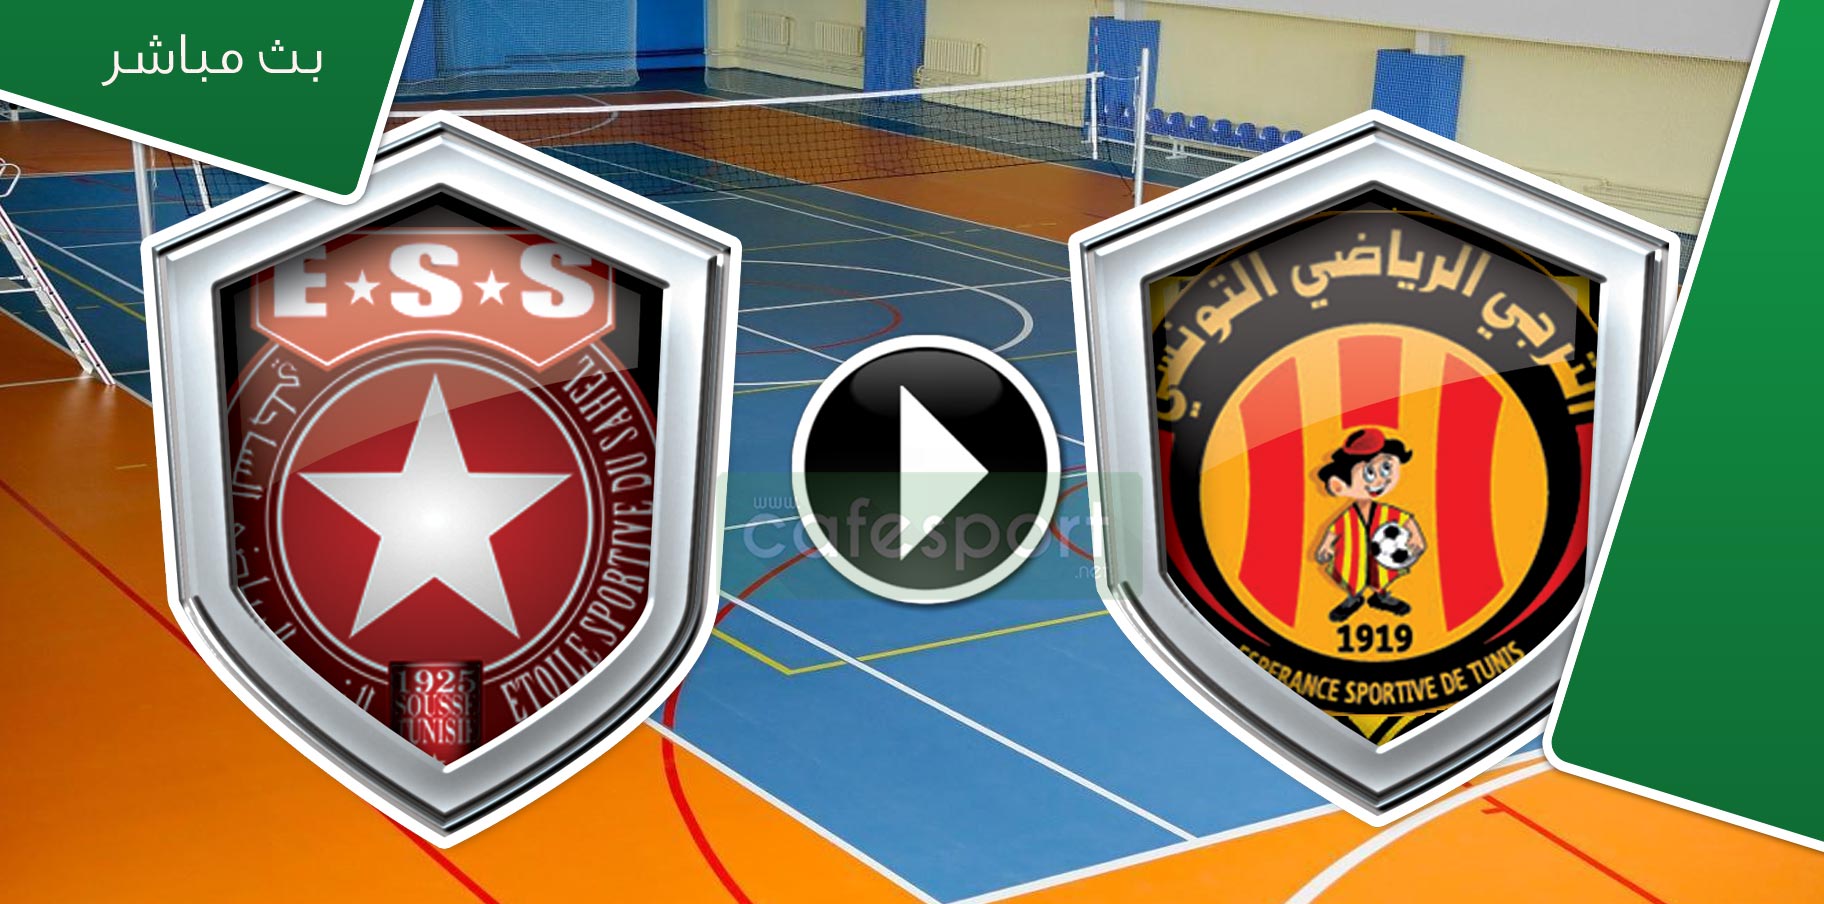 بث مباشر لمباراة الترجي الرياضي التونسي و النجم الرياضي الساحلي